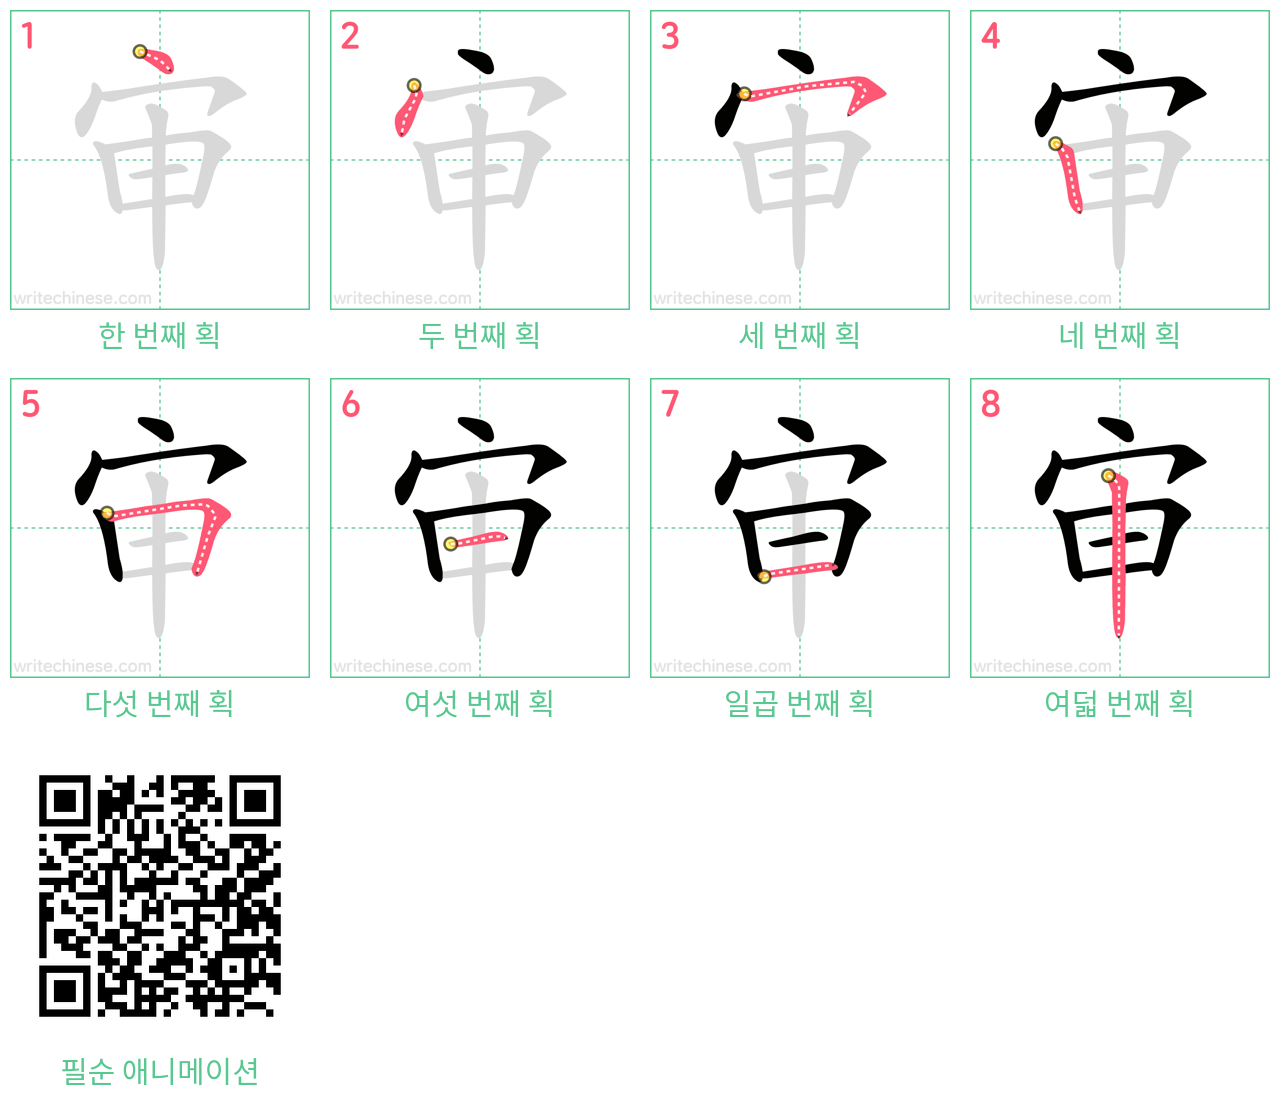 审 step-by-step stroke order diagrams